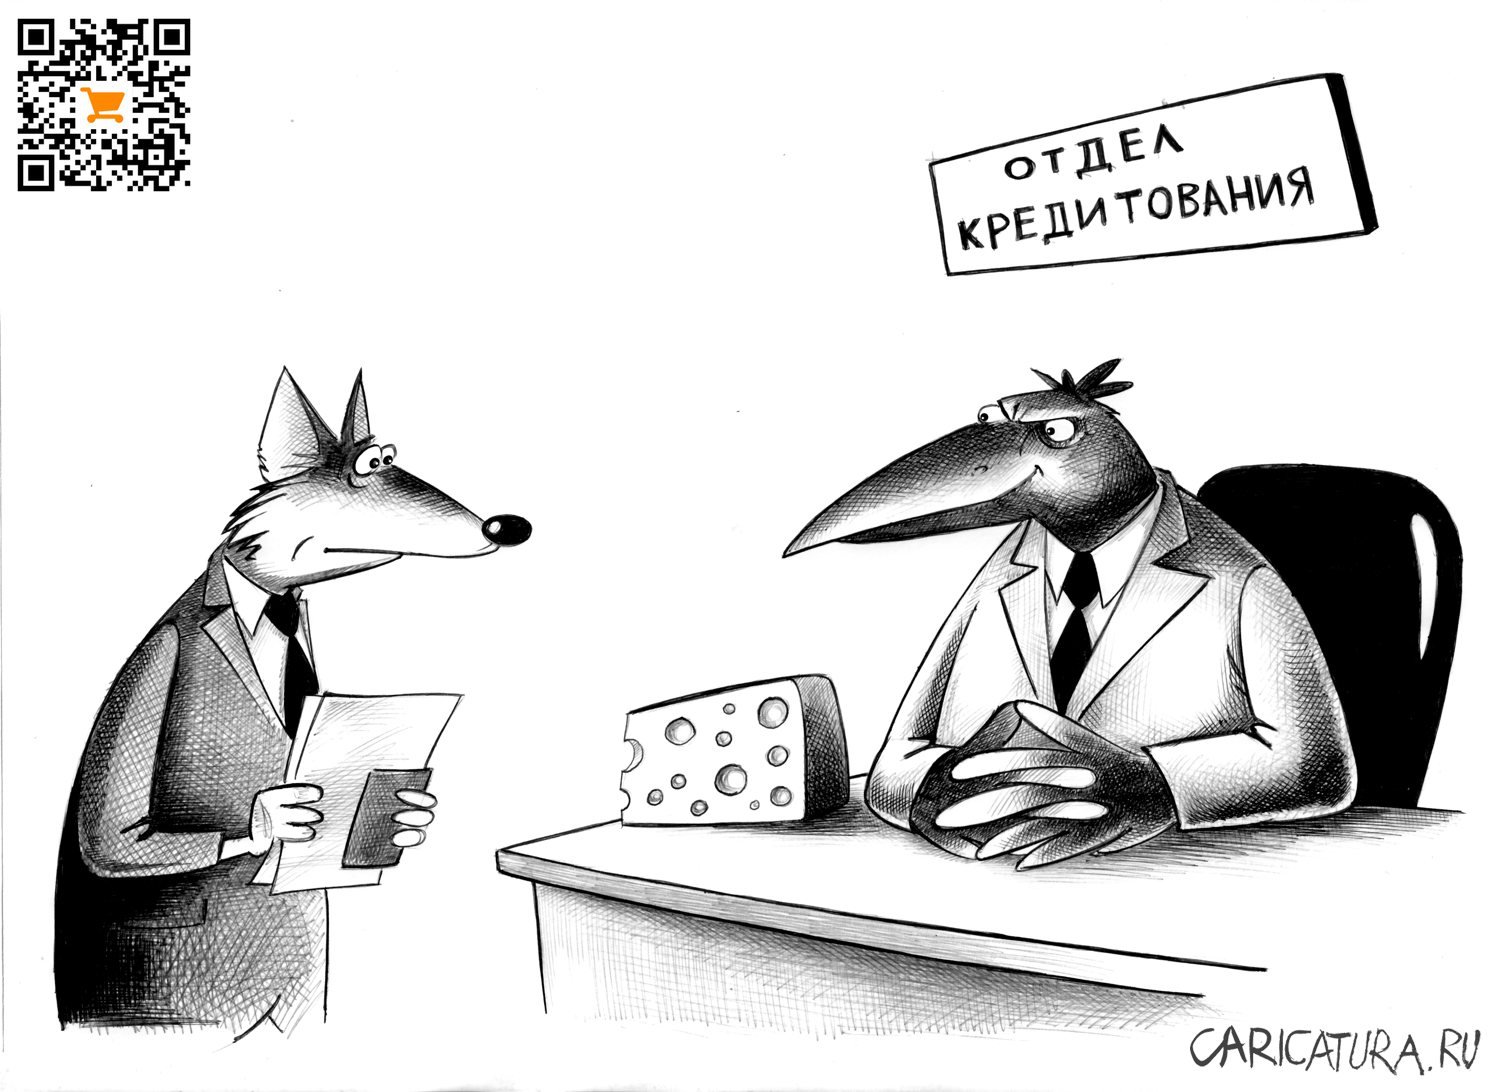 Карикатура "Отдел кредитования", Сергей Корсун